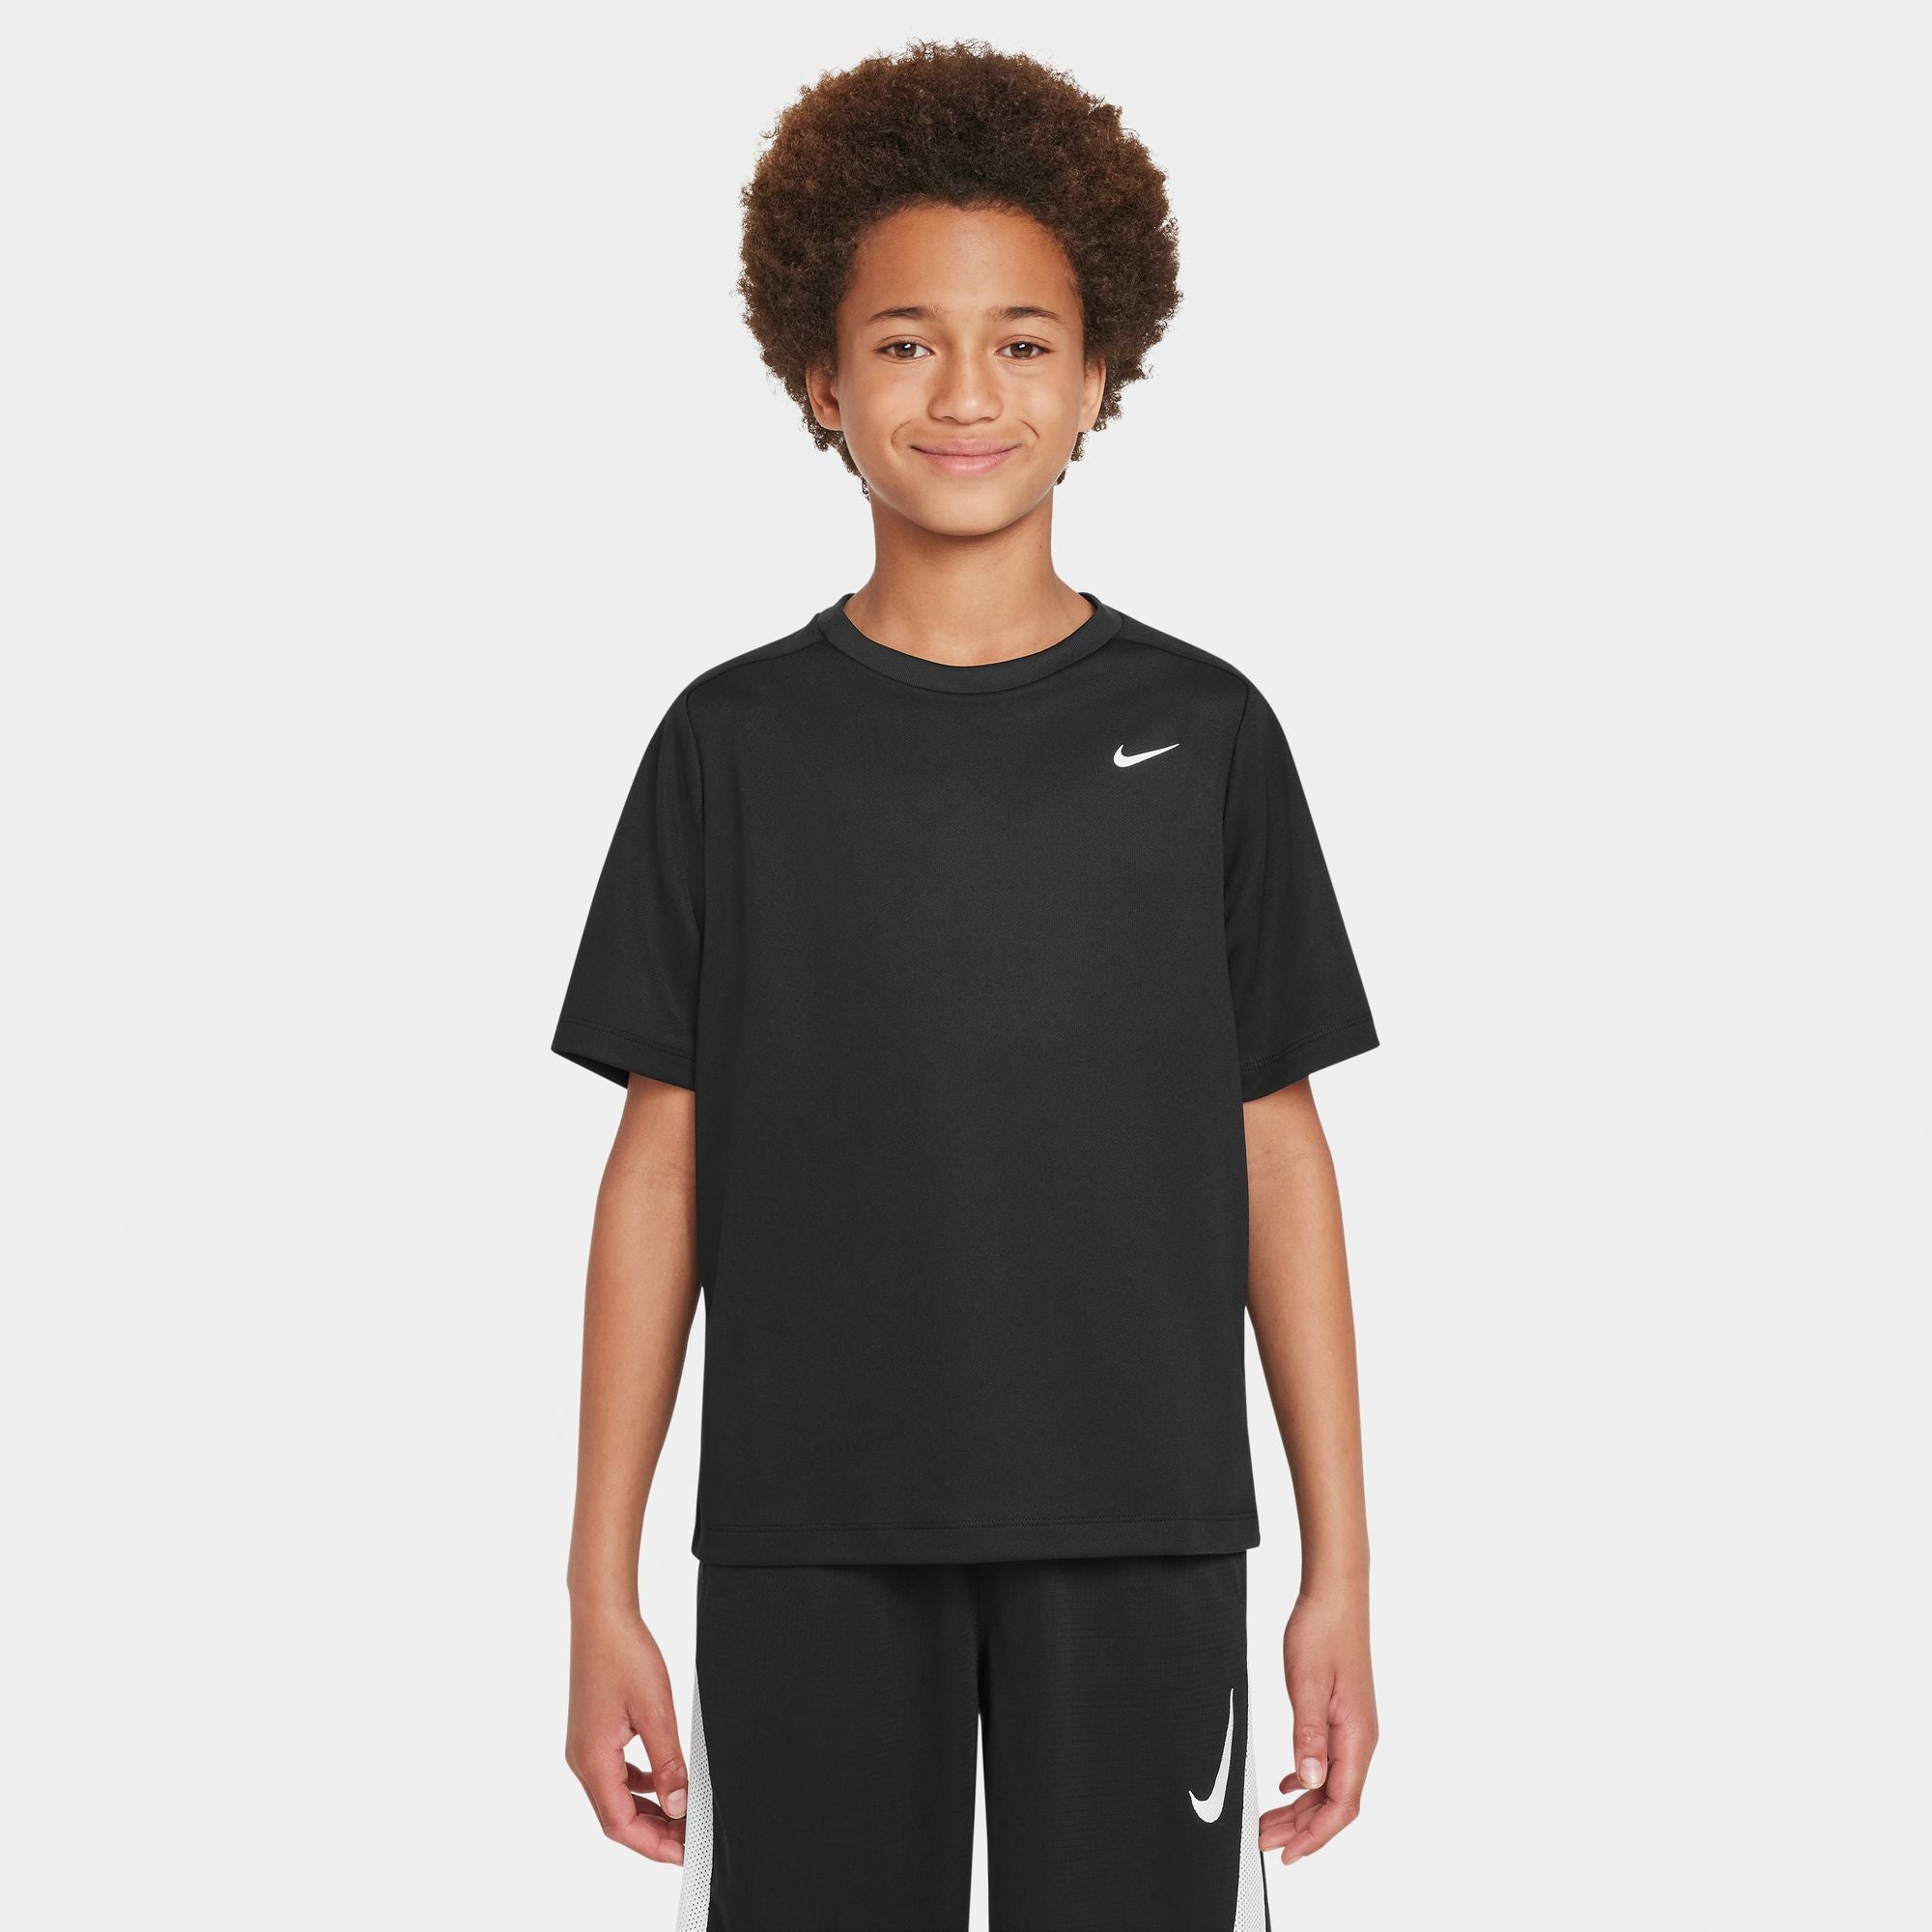 Nike Dri-FIT Multi Boys' Short Sleeve Shirt Black (1)